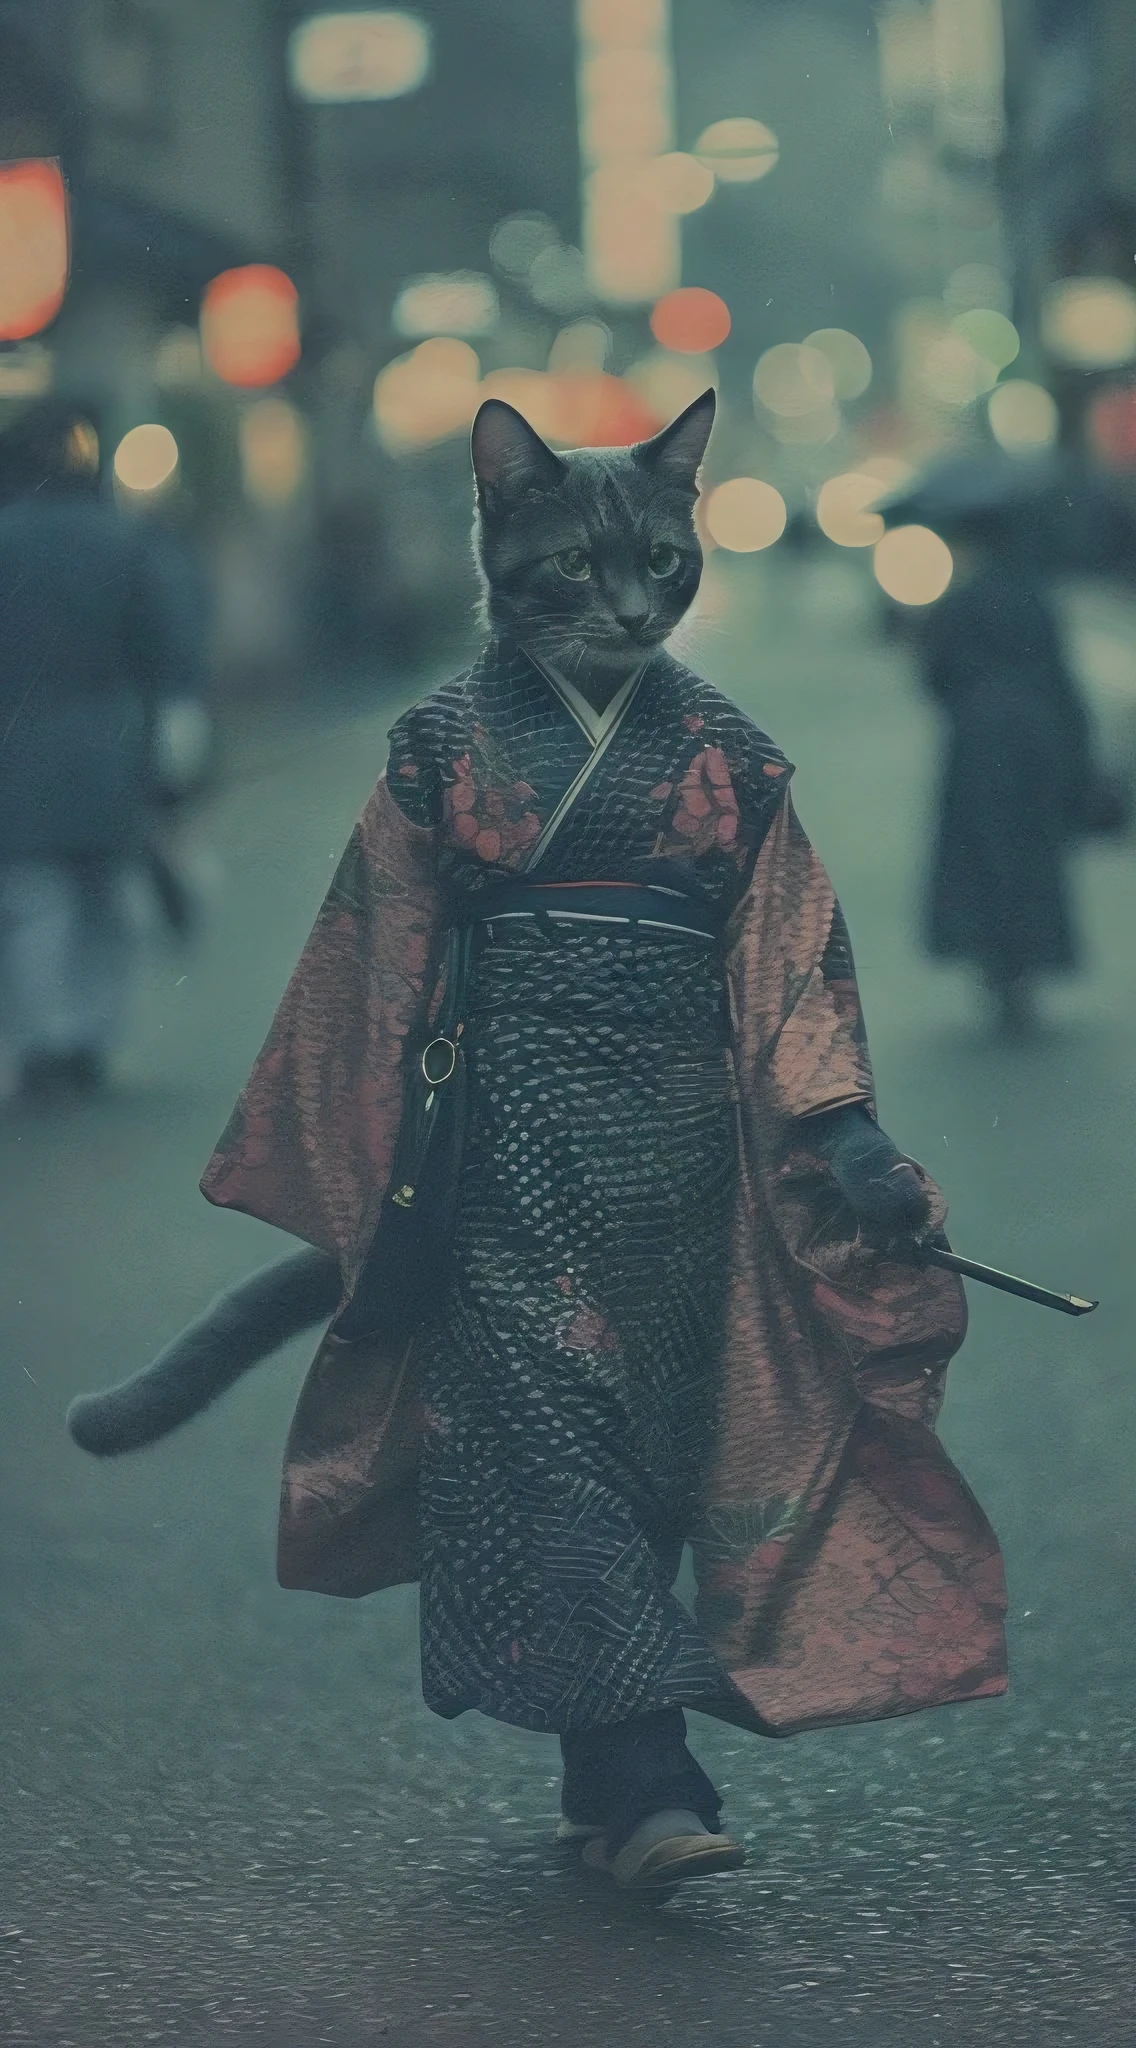 穿著漂亮和服的人形貓, 走在京都街頭, 模拟照片, 錯綜複雜的細節, 電影燈光, 柔和的調色板, 膠片顆粒, 景深, 高品質, 傑作